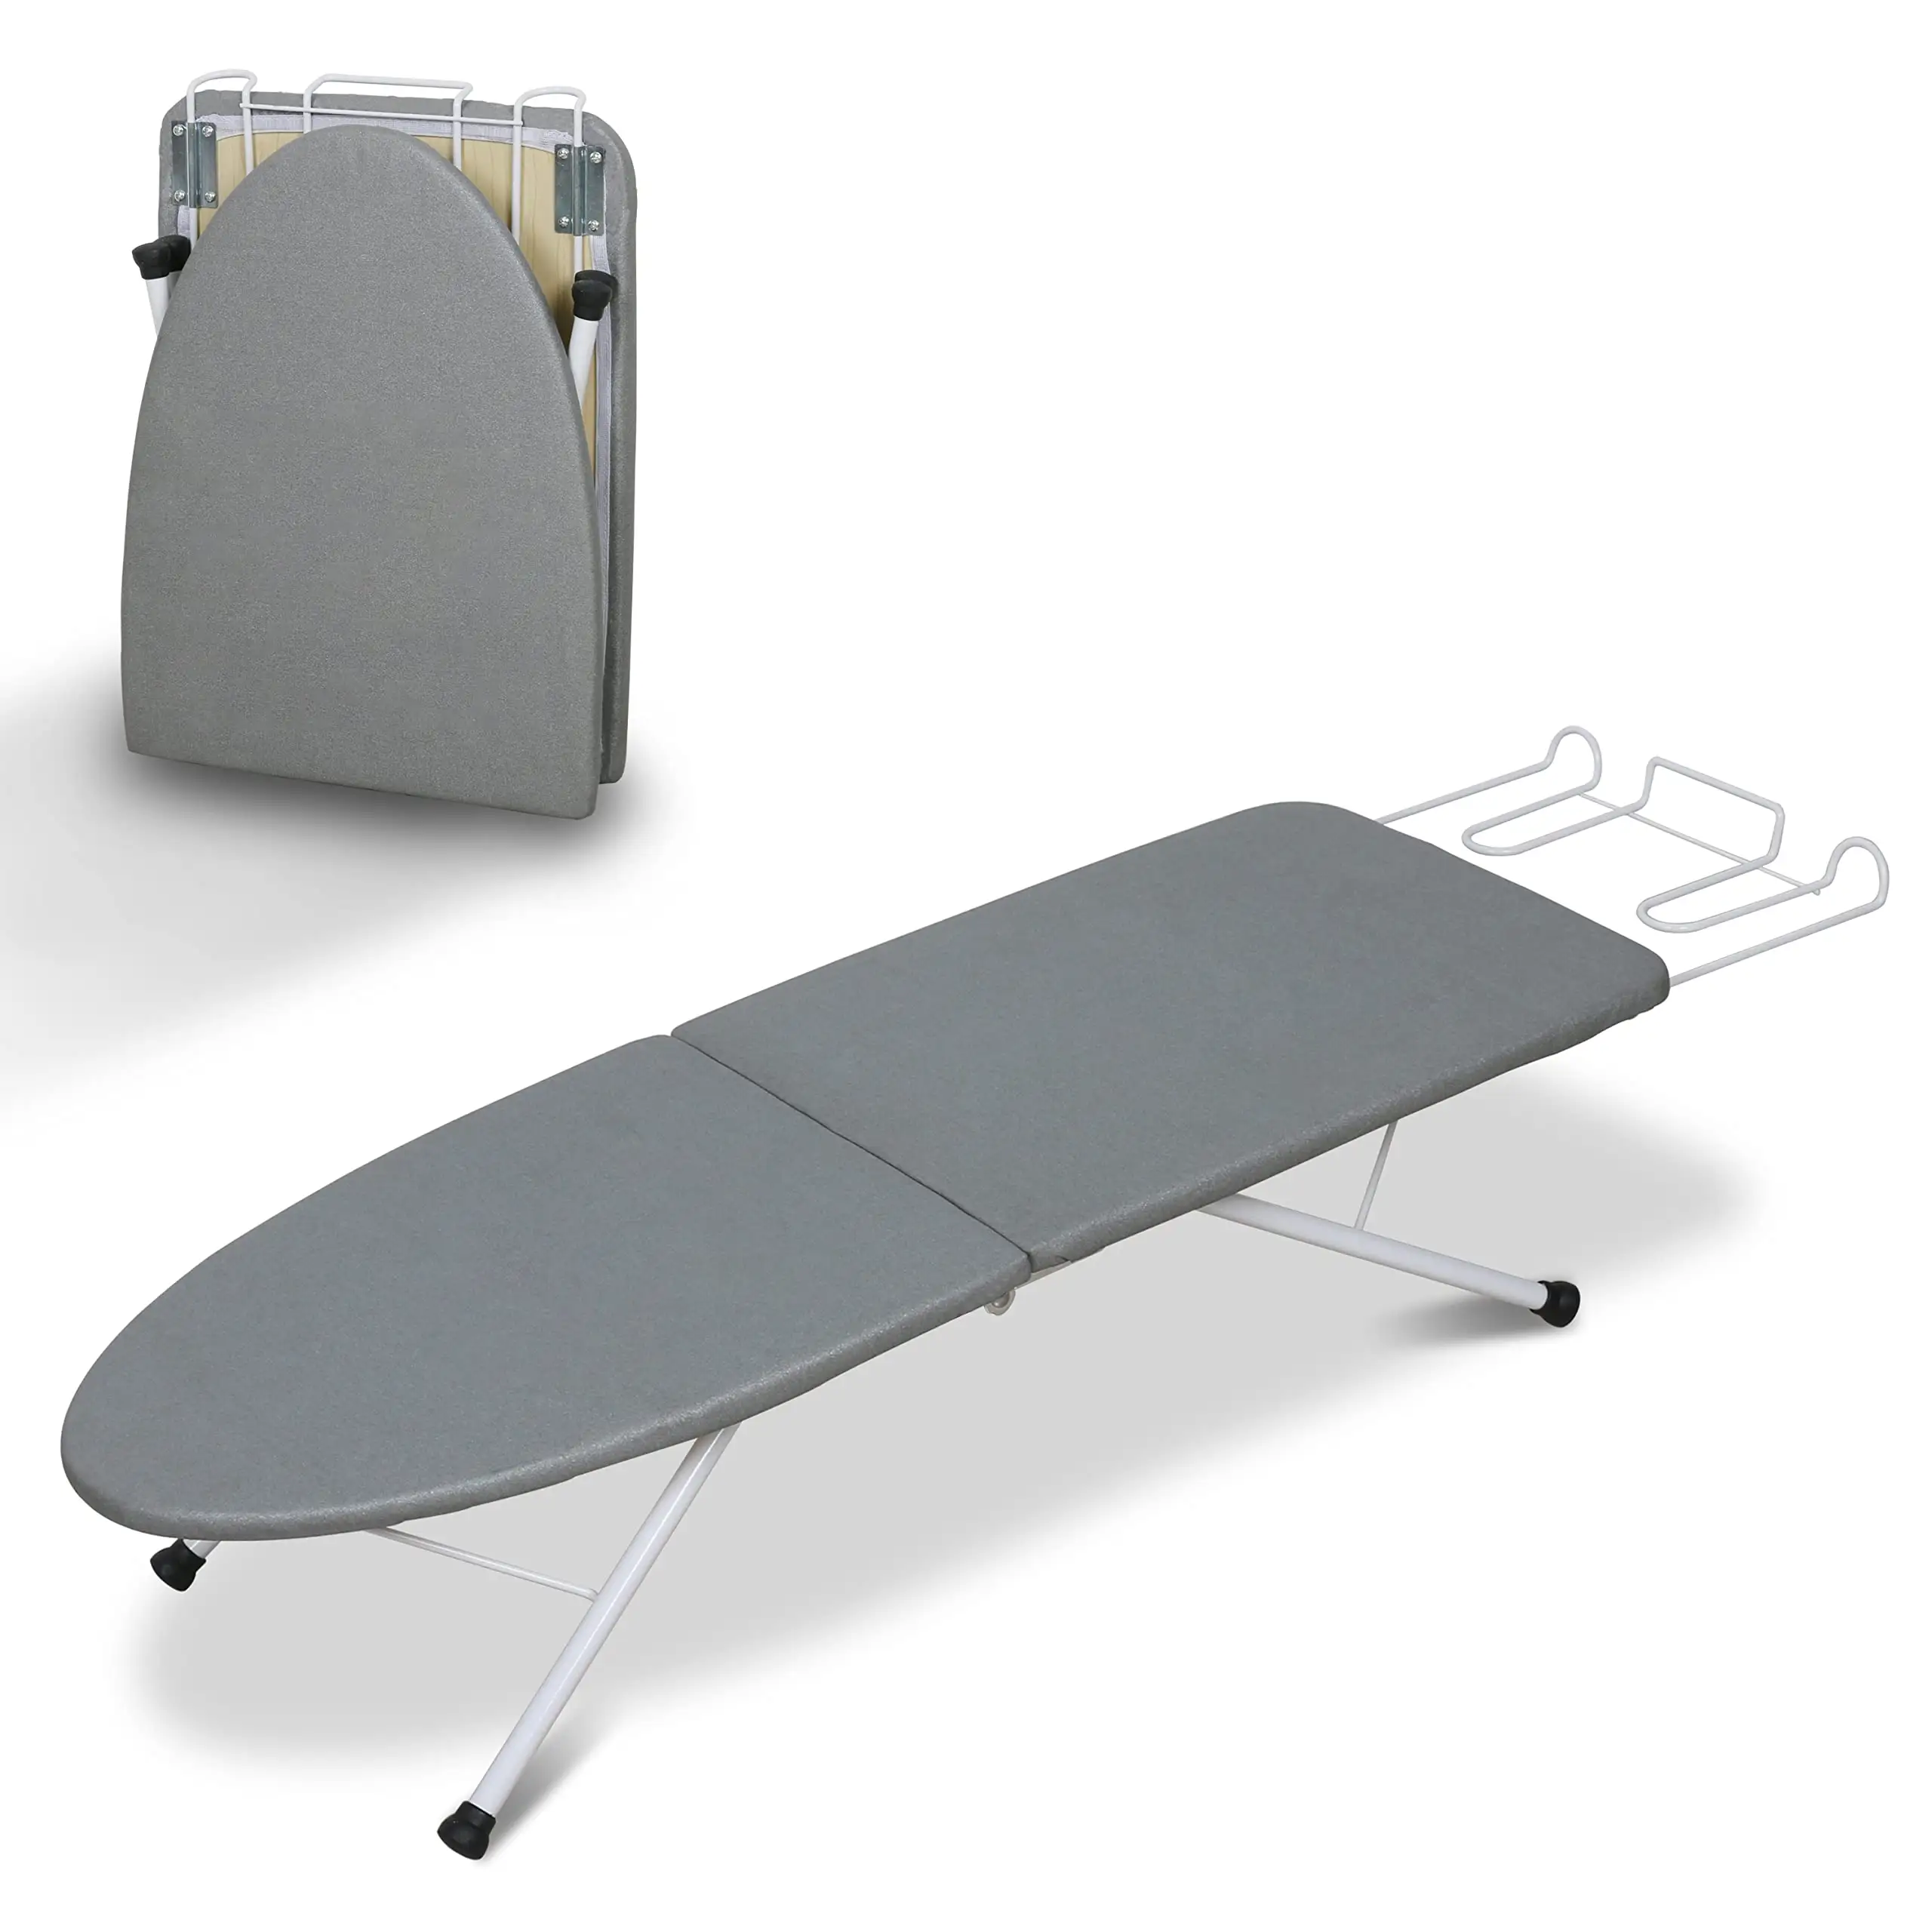 Demir dinlenme ile taşınabilir ısıya dayanıklı masa üstü katlanabilir Mini ütü masası